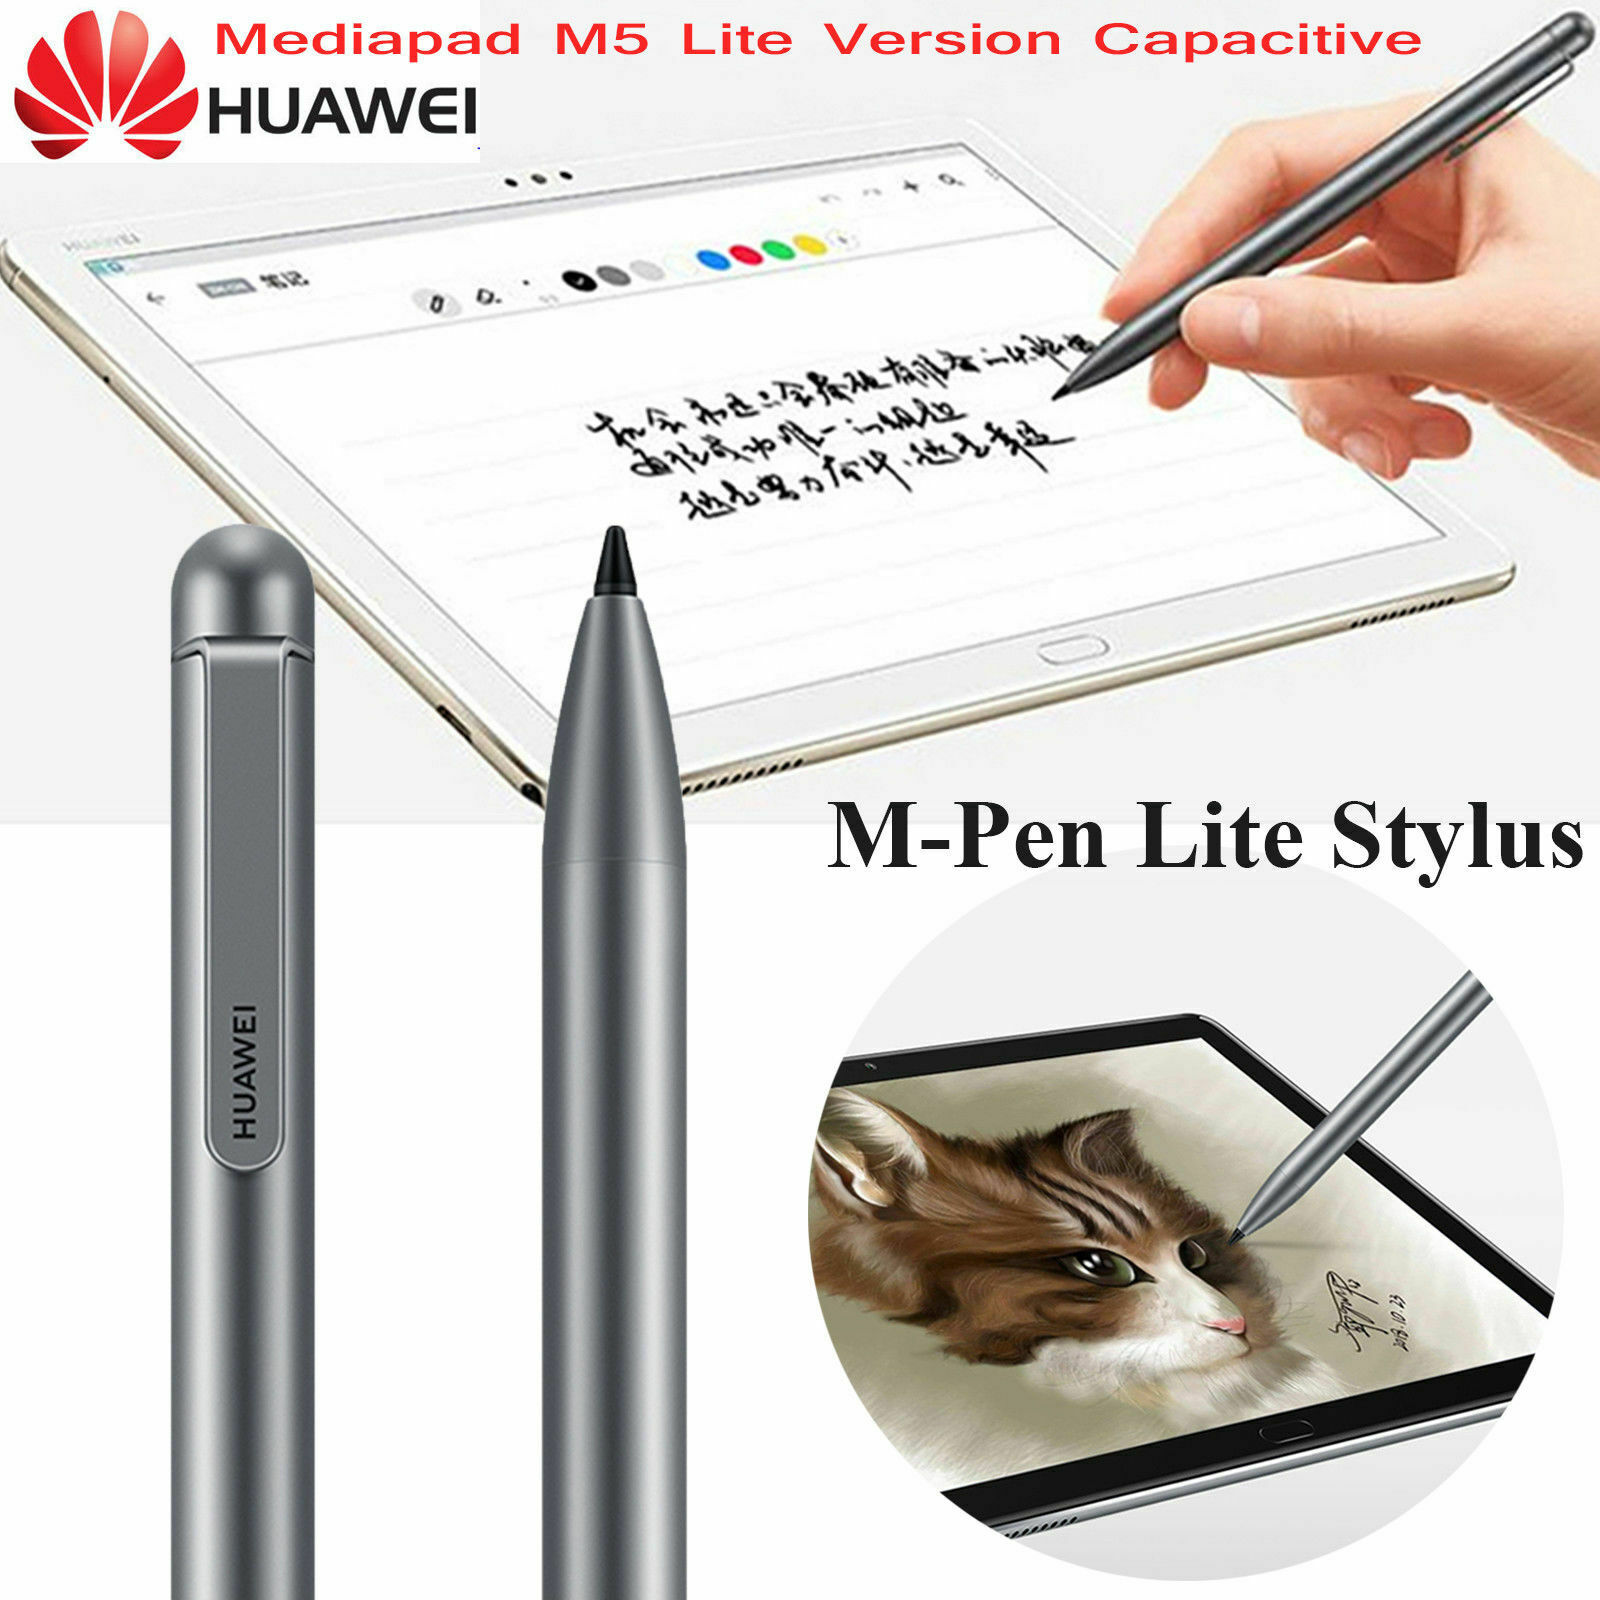 productspro m-pen lite pour huawei mediapad m5 lite stylet capacitif tablette stylo pour matebook e mediapad m6